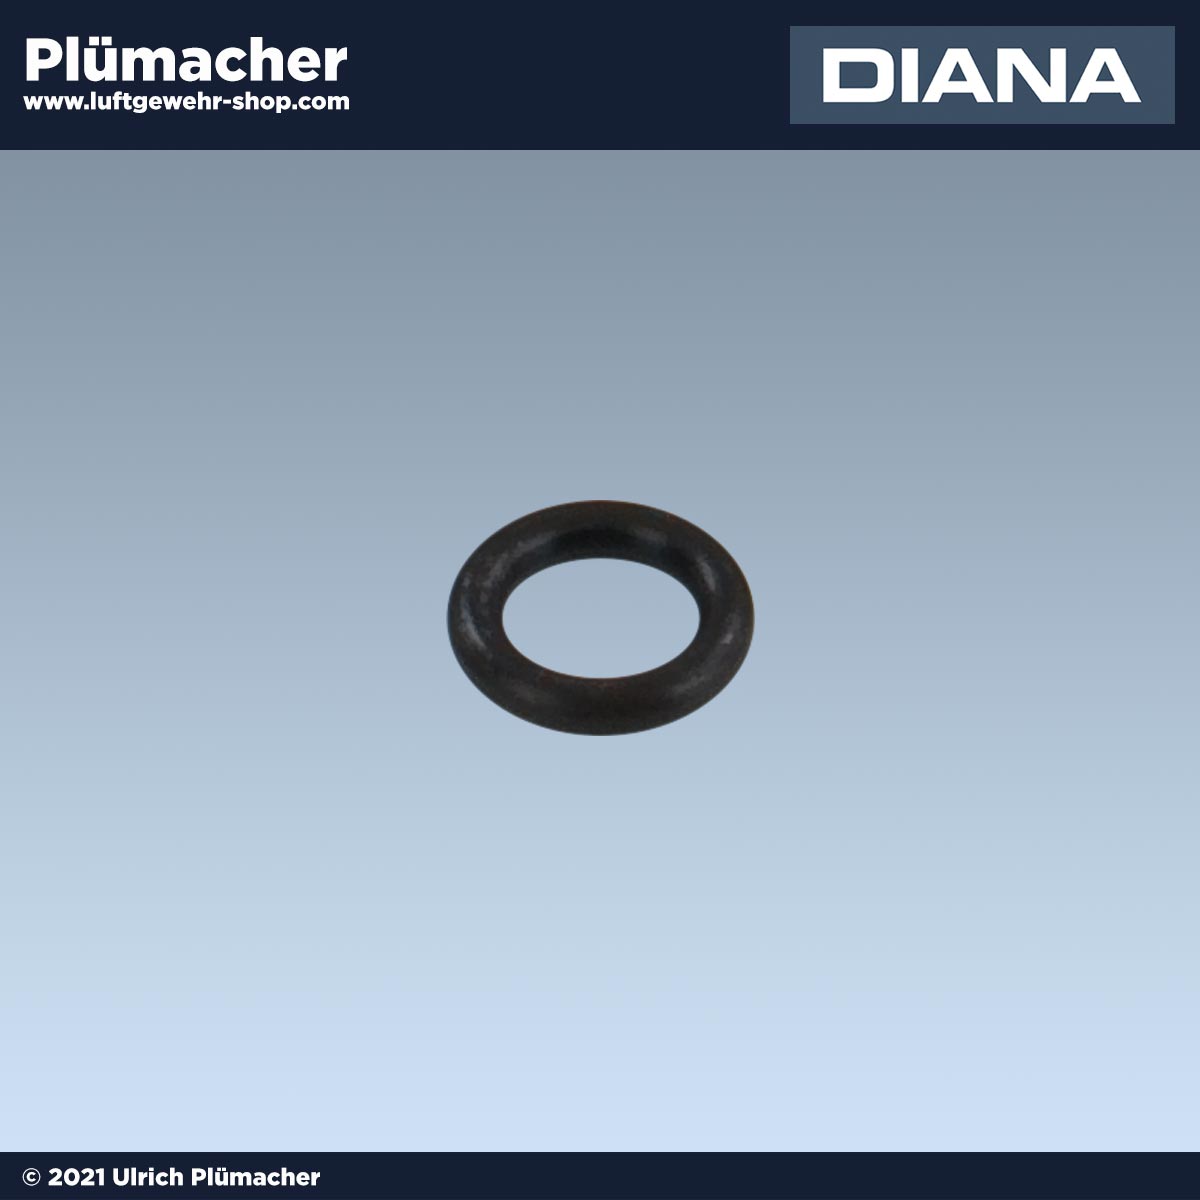 Diana 35-27 Laufdichtung - O-Ring 8 x 2,5 für Luftgewehre . Luftgewehr-Shop  - Luftgewehre, Schreckschusswaffen, CO2 Waffen, Luftpistolen kaufen